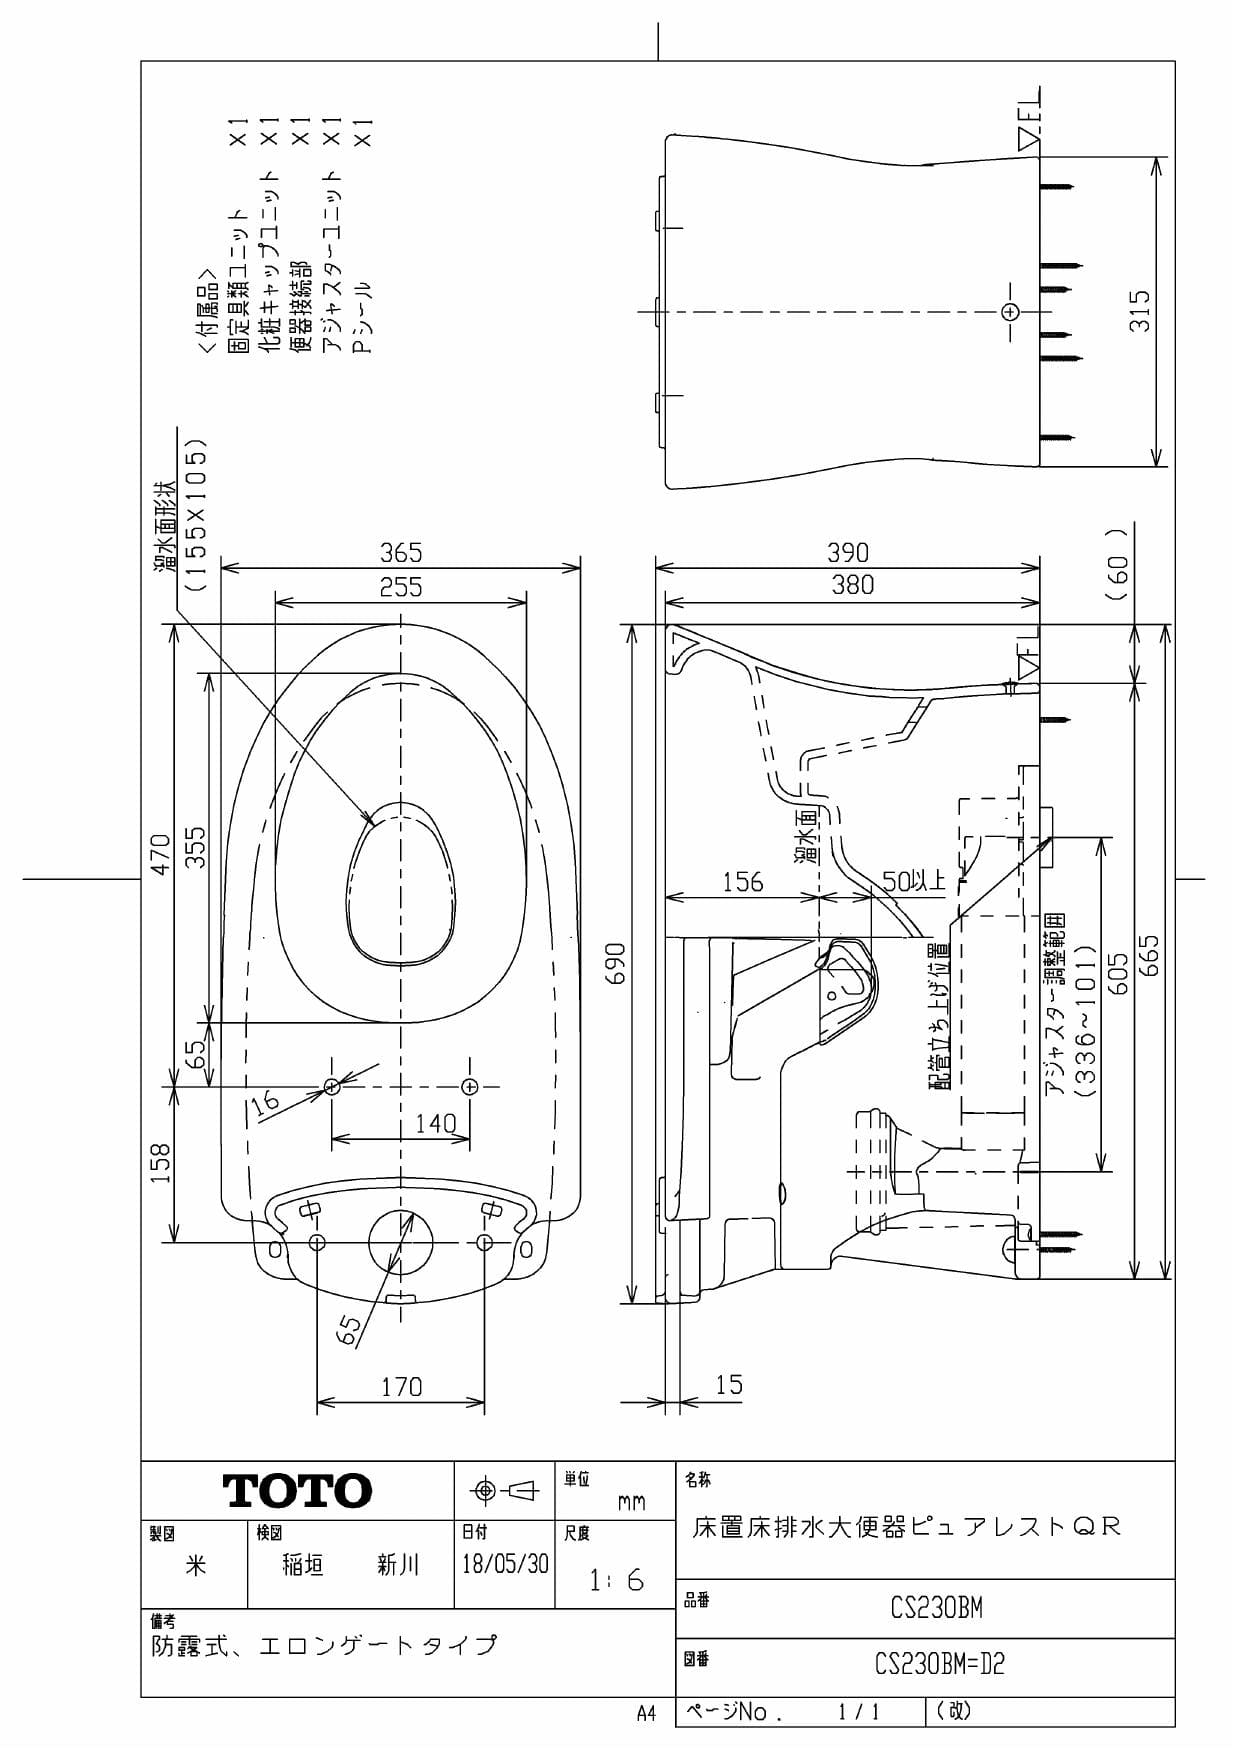 激安格安割引情報満載 TOTO 床置壁排水大便器ピュアレストEX 商品画像はイメージです